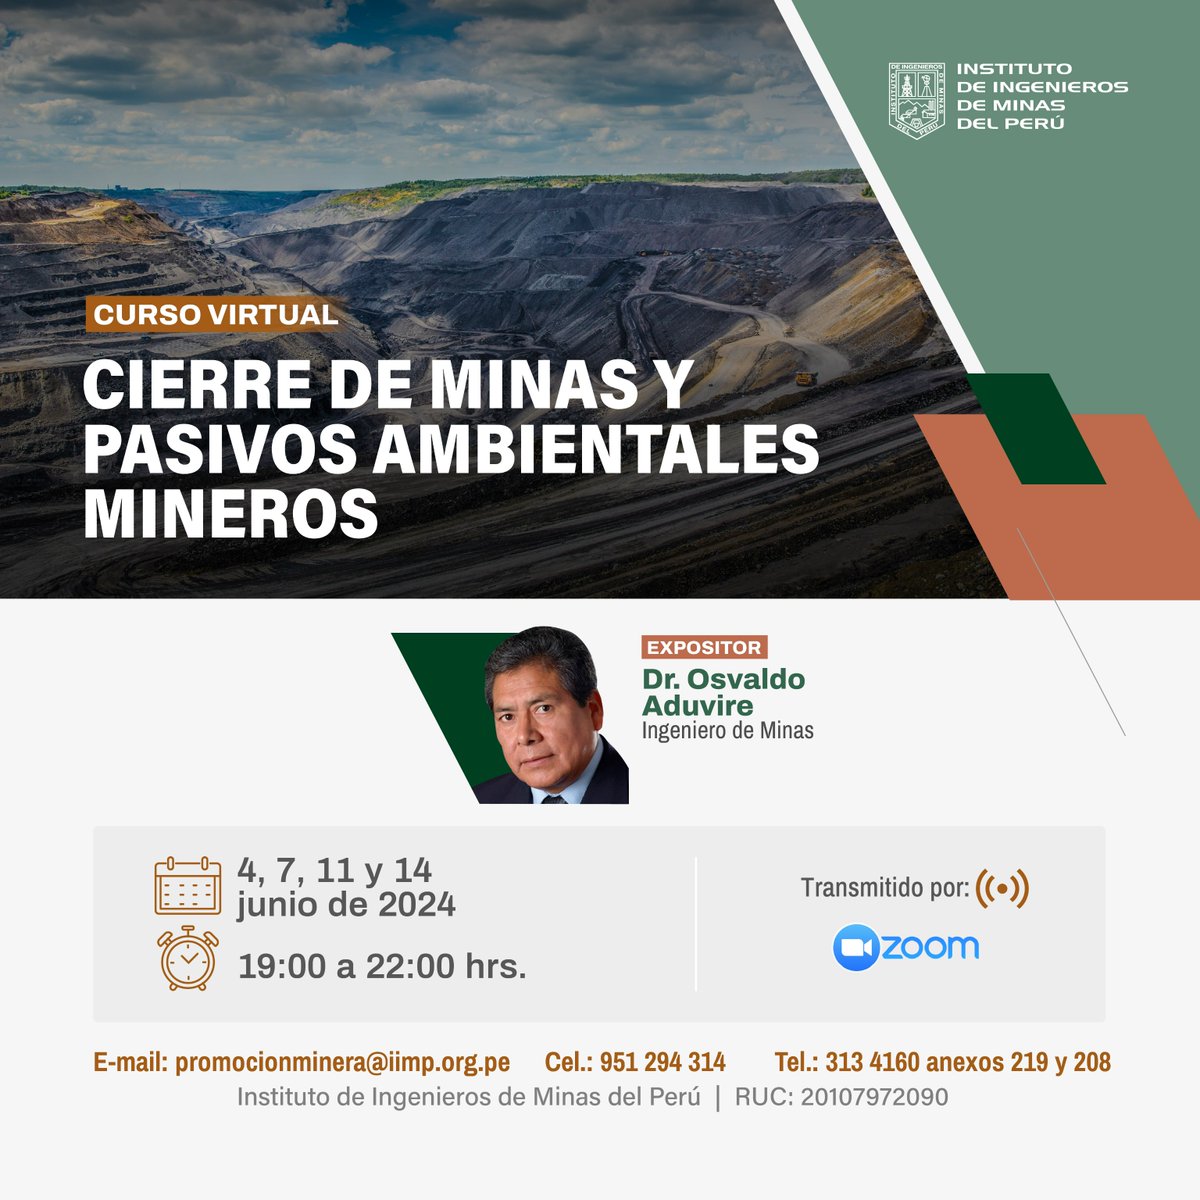 Los invitamos a participar del curso virtual Cierre de minas y pasivos ambientales mineros. Será dictado por el Dr. Osvaldo Aduvire. 📌 Inscríbete aquí: ow.ly/C8k050QpA4e 📌 Se pueden contactar a wa.me/51951294314